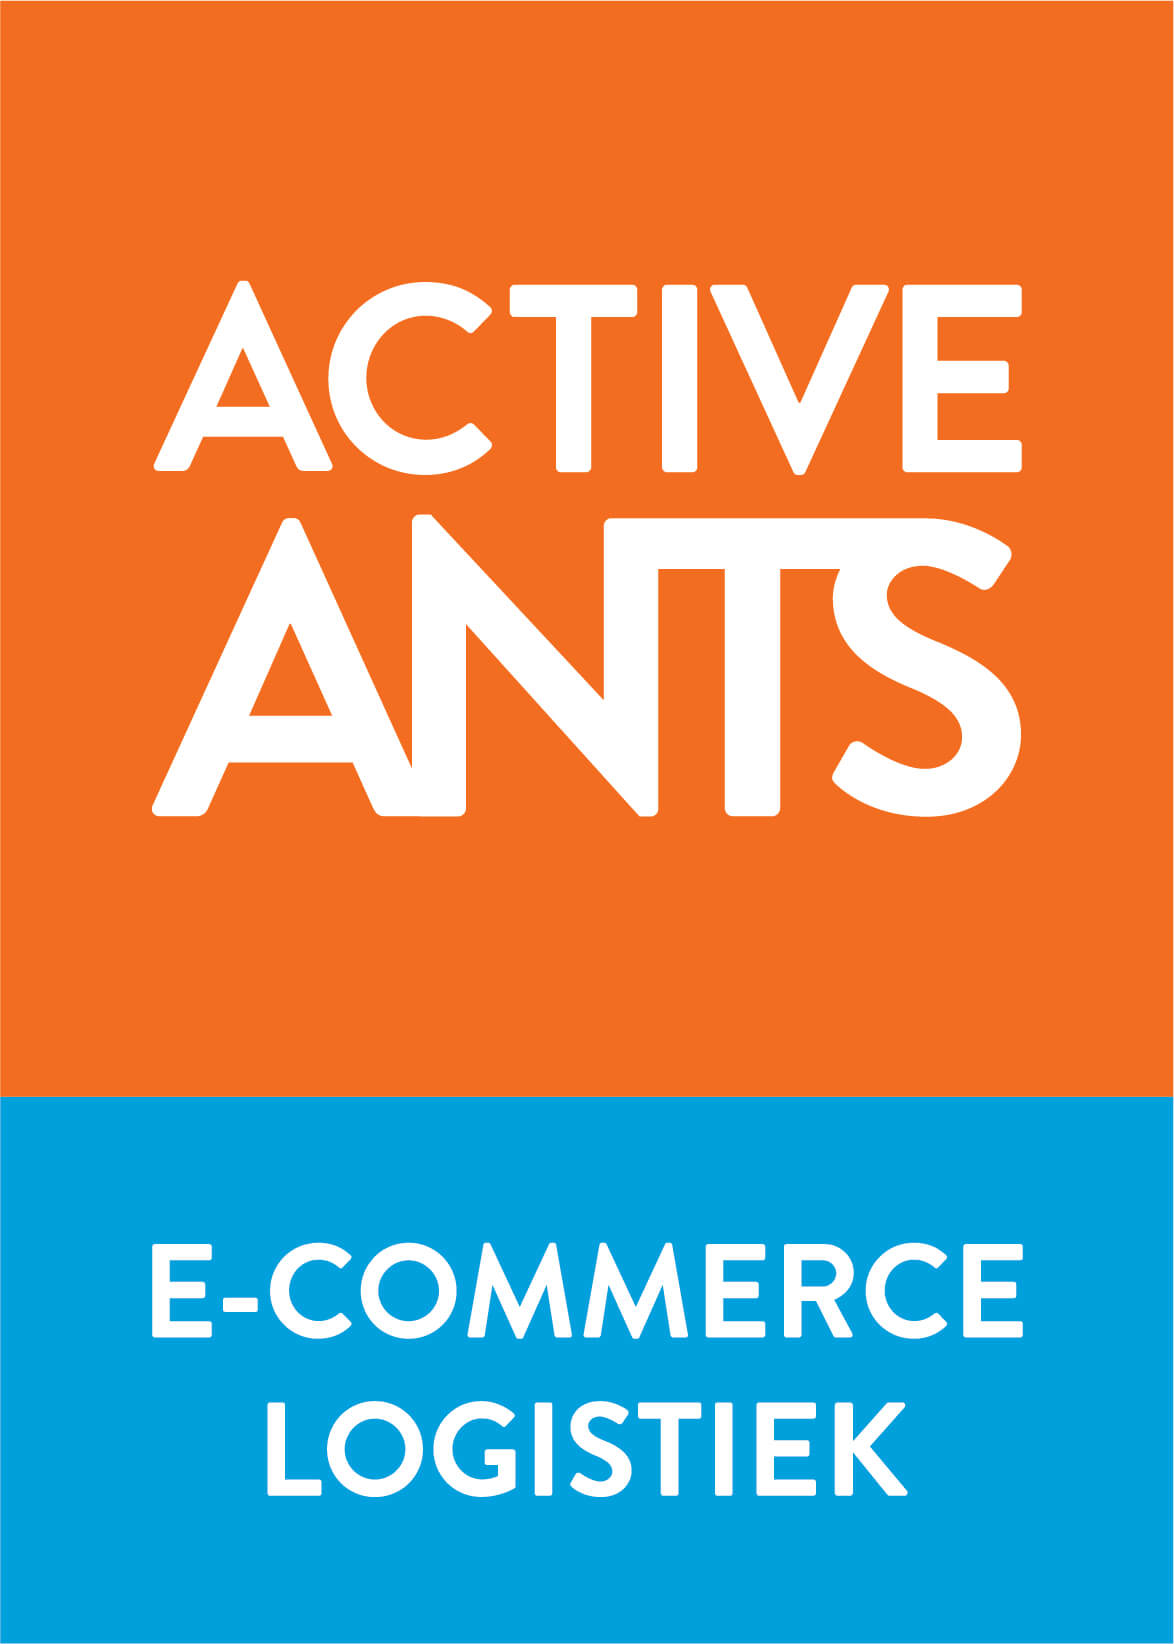 Active ants